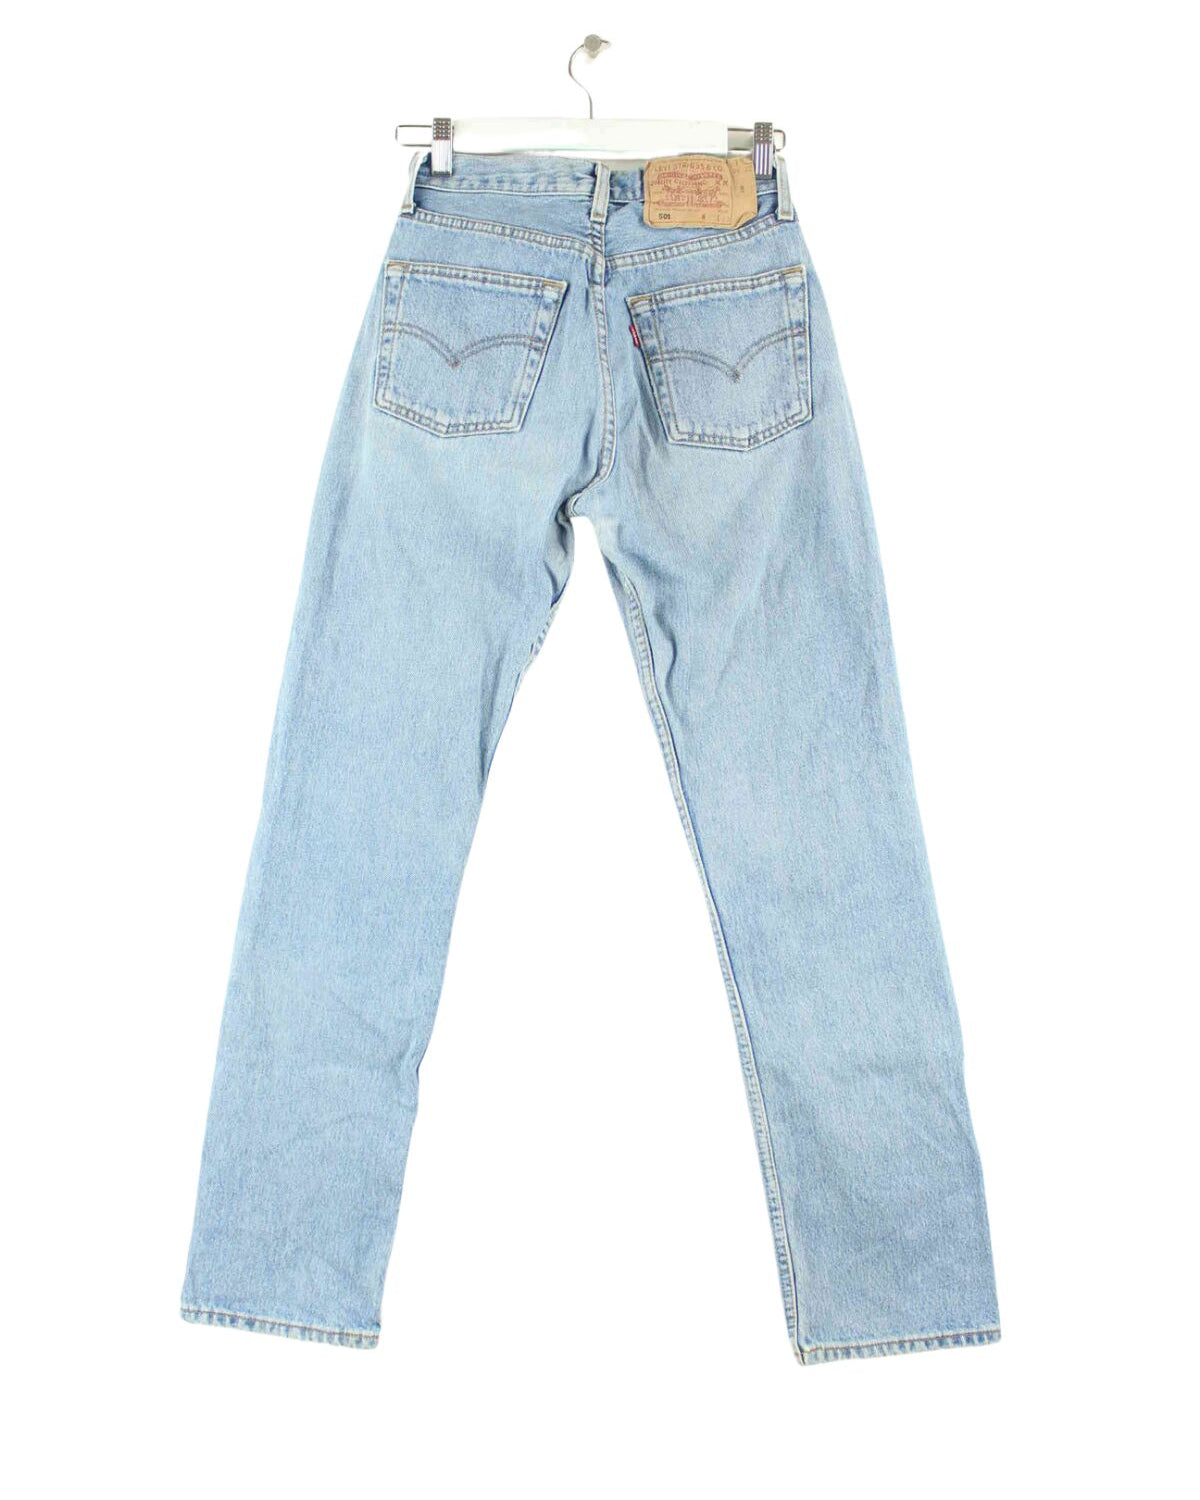 Levi's 1997 Vintage 501 Jeans Blau W25 L30 (back image)